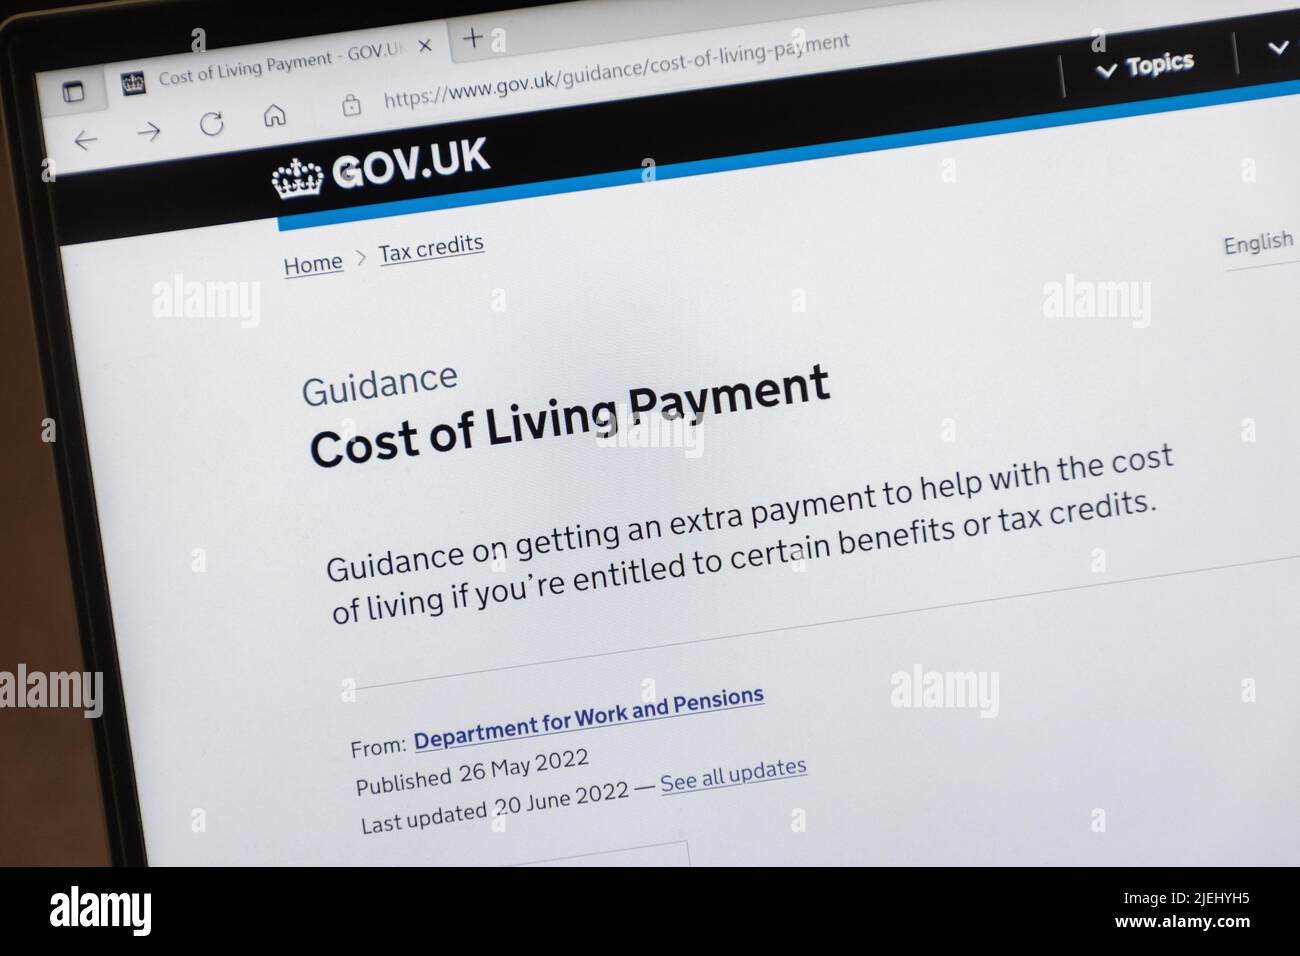 Cost of Living Payment, Leitfaden für die Beantragung finanzieller Unterstützung auf der Website gov.uk, 2022 Stockfoto